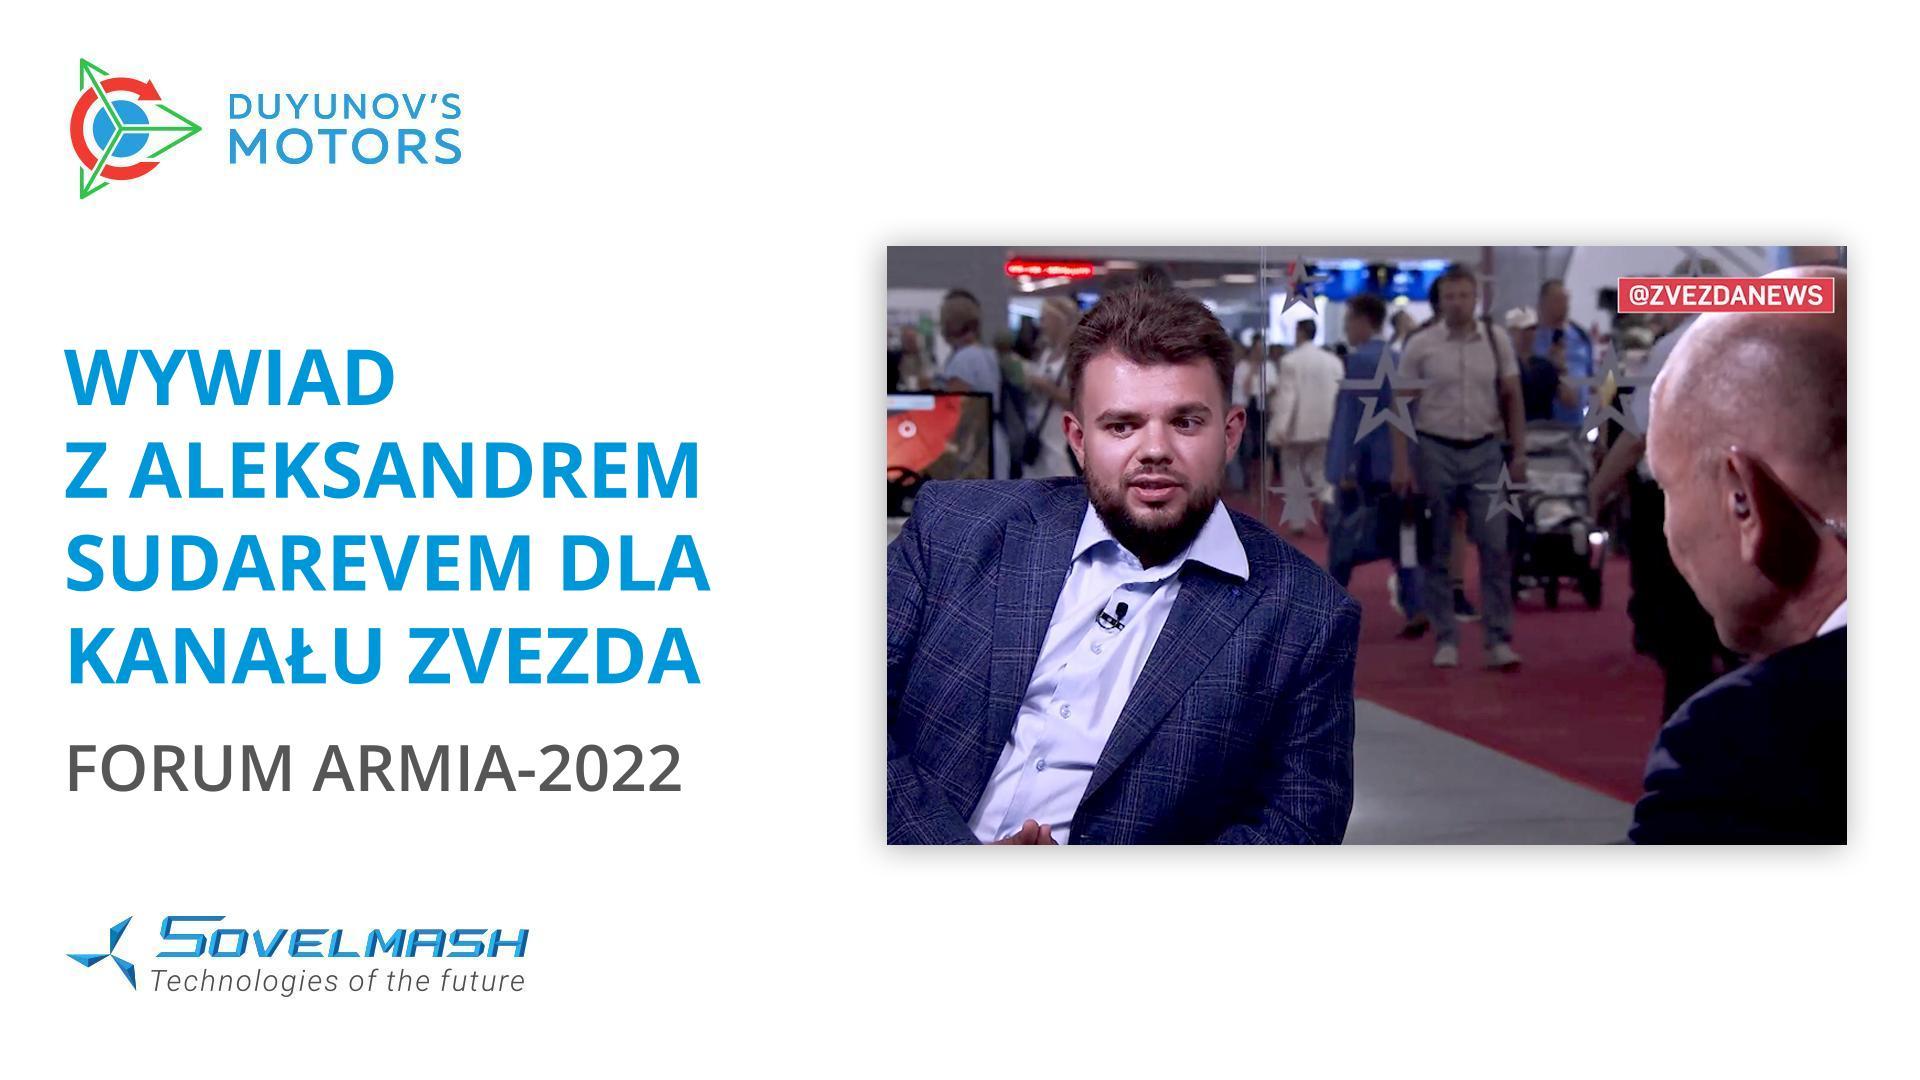 Wywiad z Aleksandrem Sudarevem dla kanału Zvezda | Forum Armia-2022